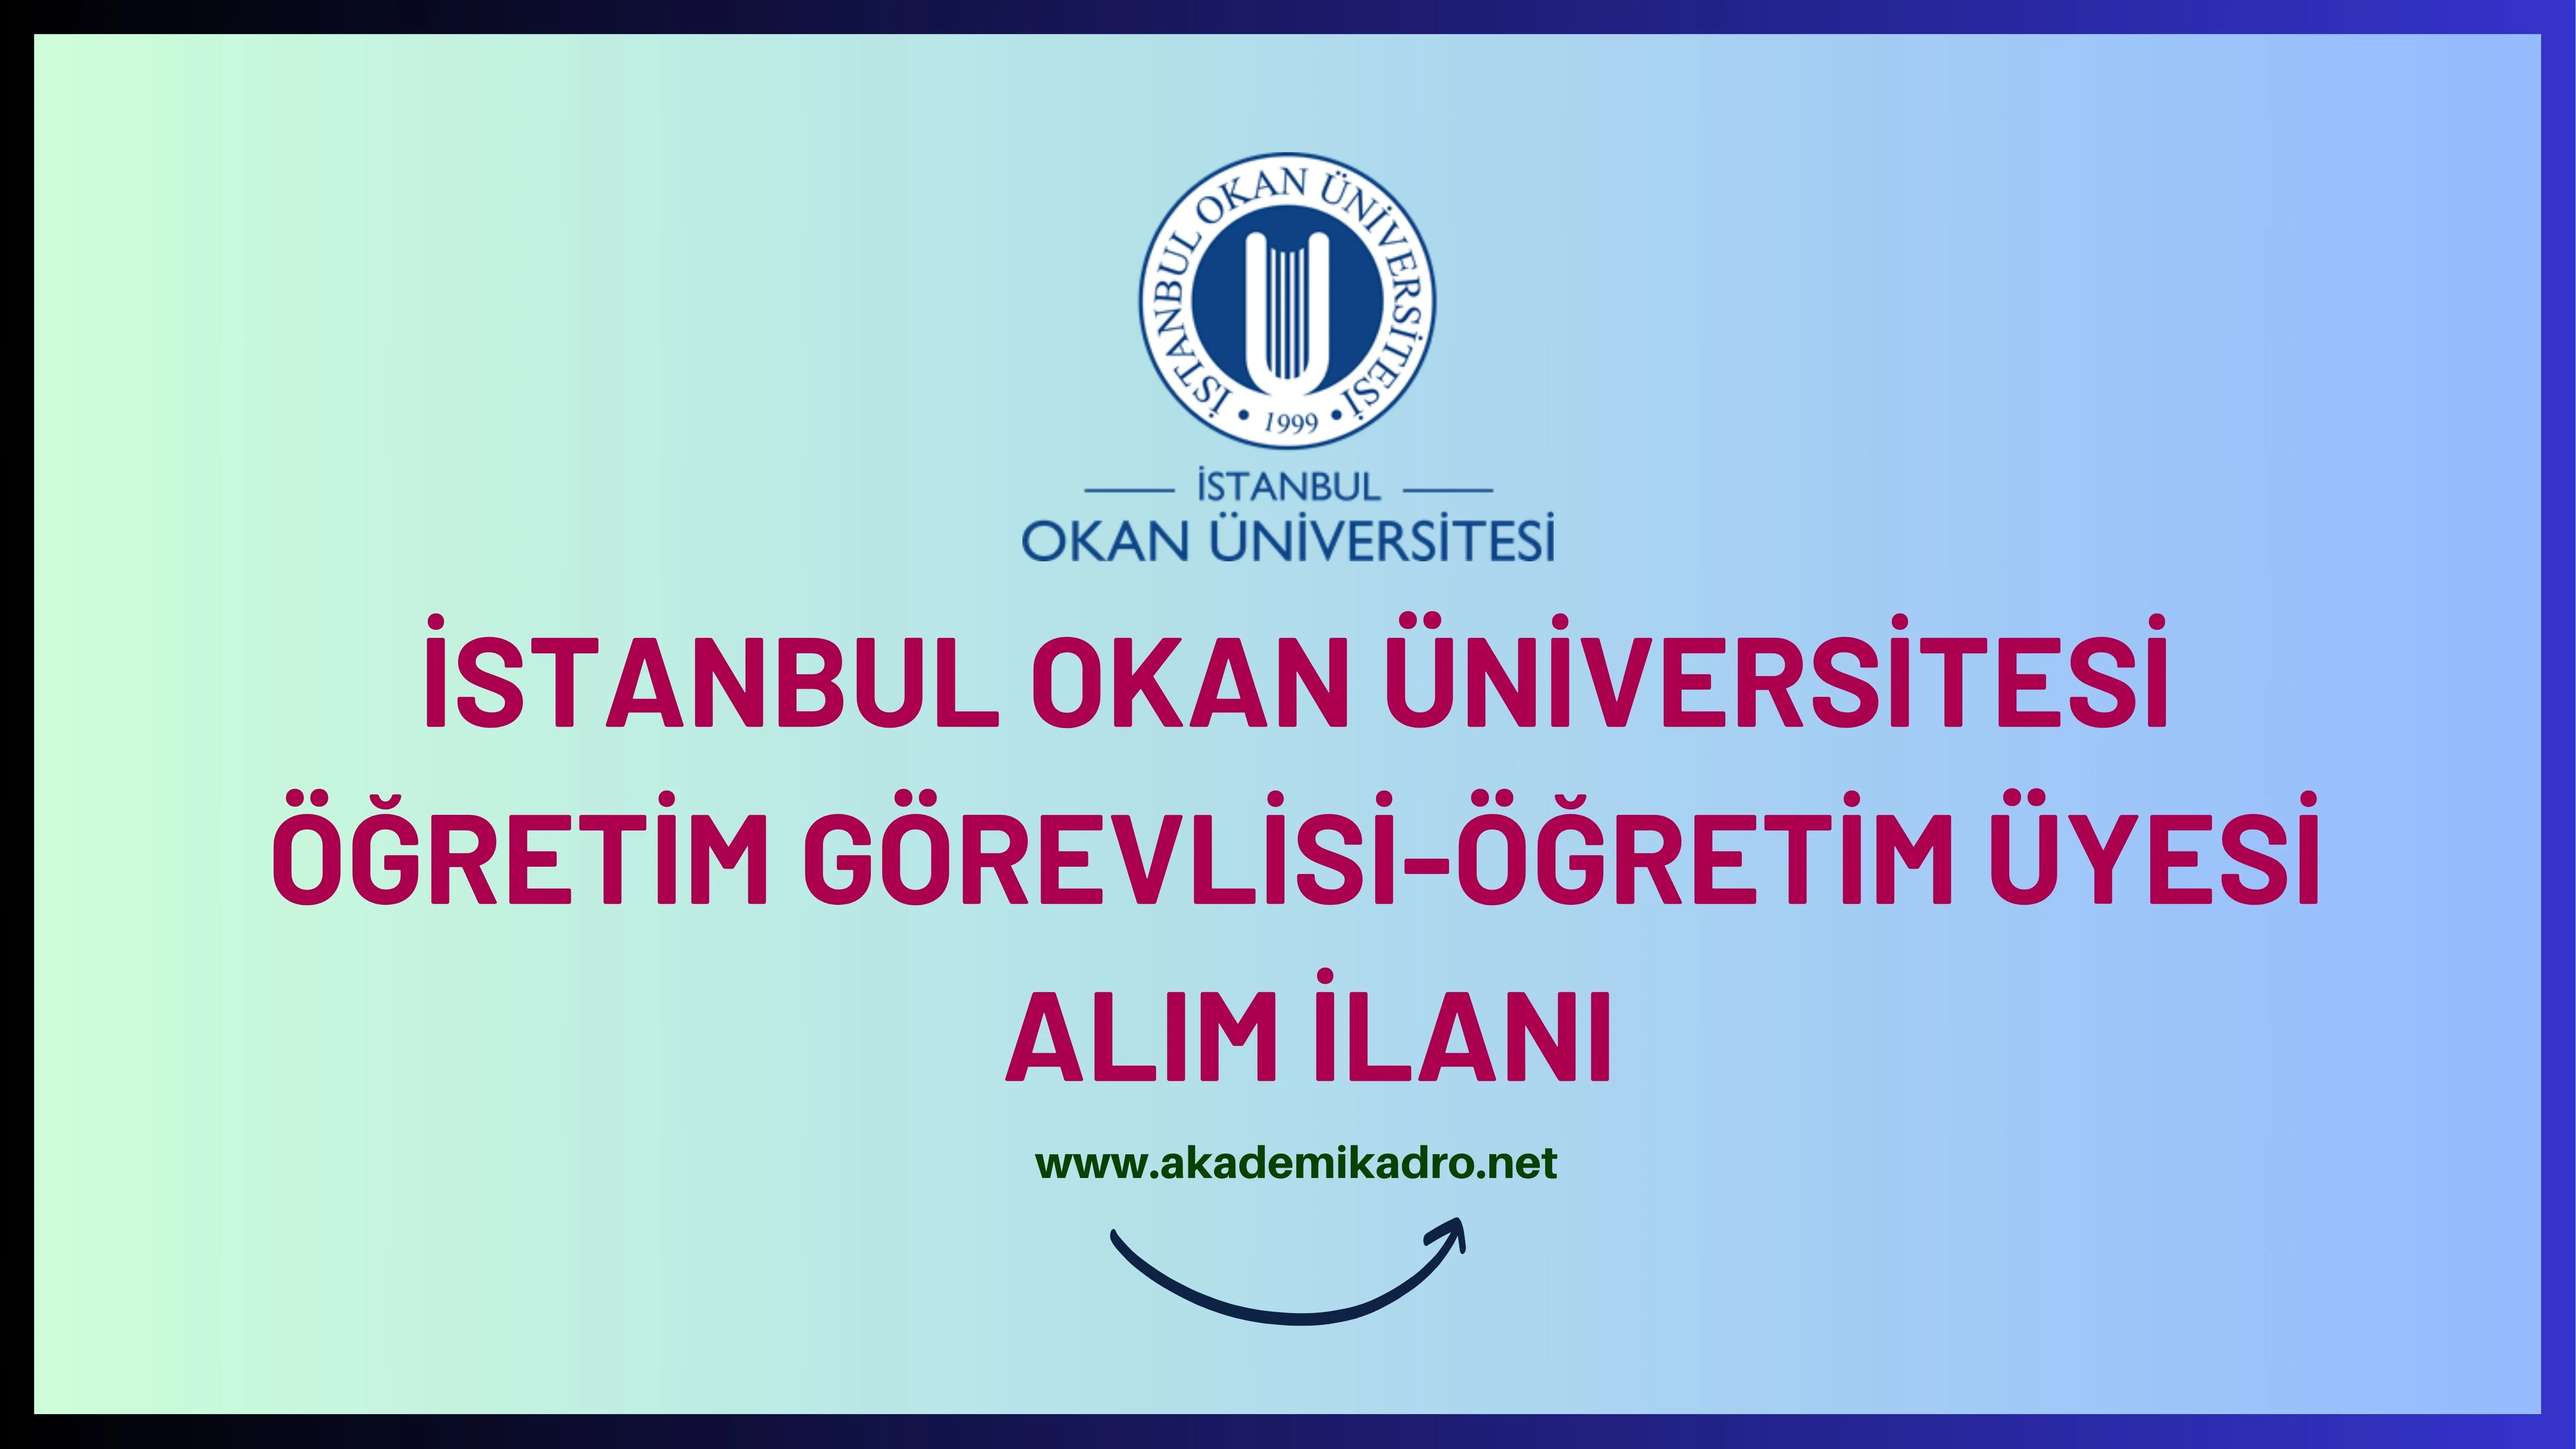 İstanbul Okan Üniversitesi 8 Öğretim görevlisi ve 25 Öğretim üyesi alacak.